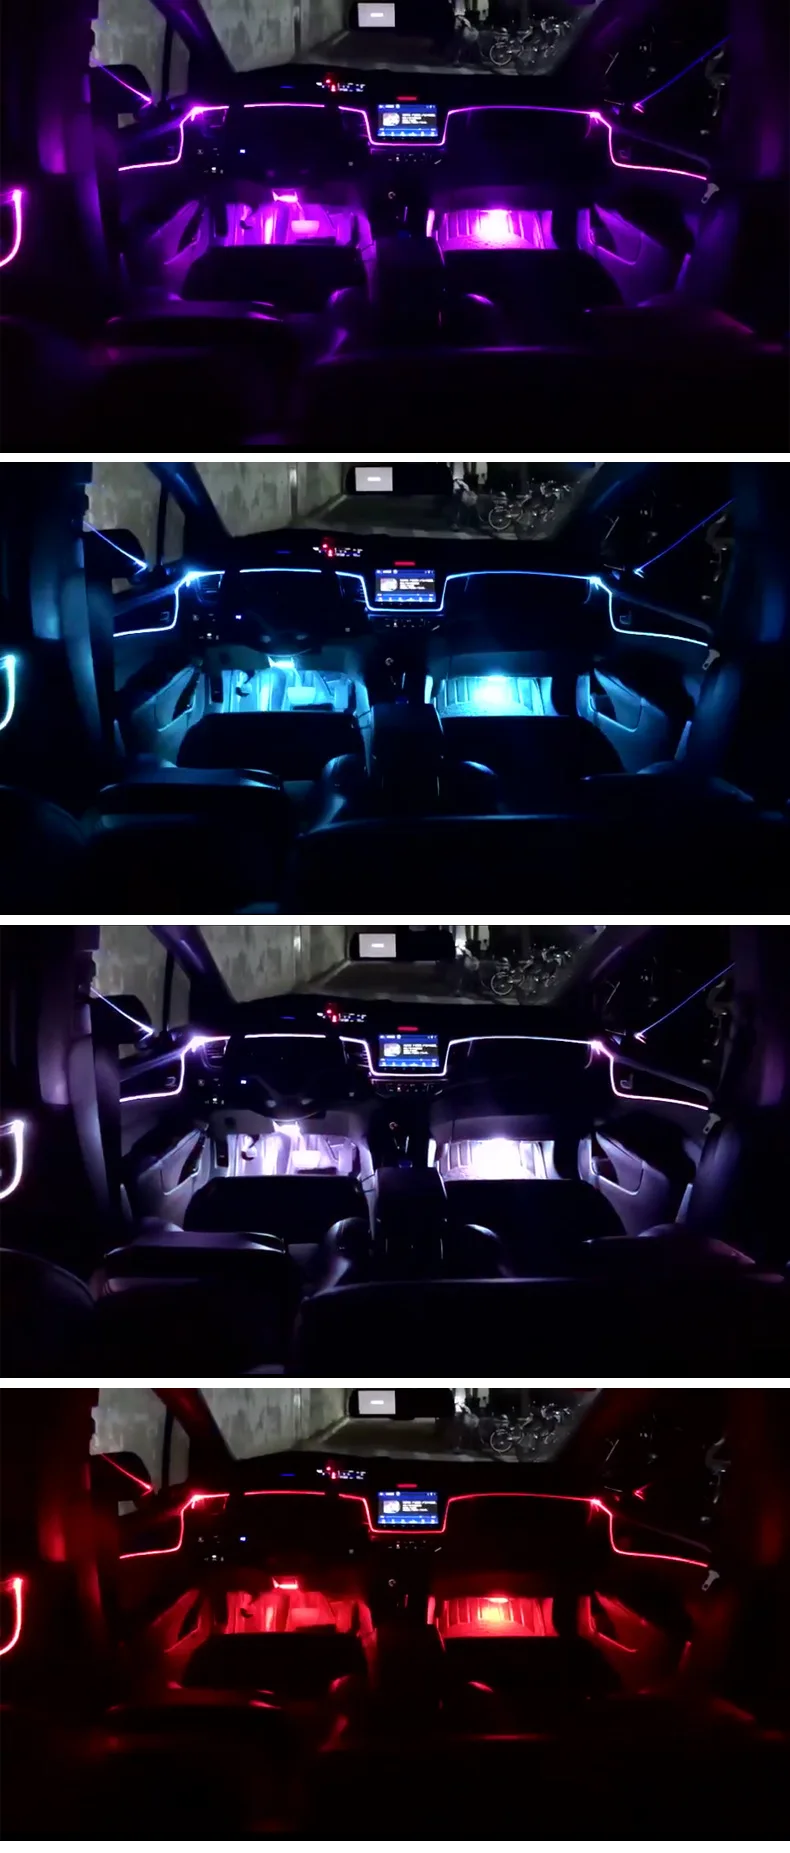 10 в 1 RGB светодиодный 10 м автомобильный интерьерный декоративный атмосферный светильник, звуковая активная неоновая полоска, многоцветная bluetooth-лампа для управления телефоном